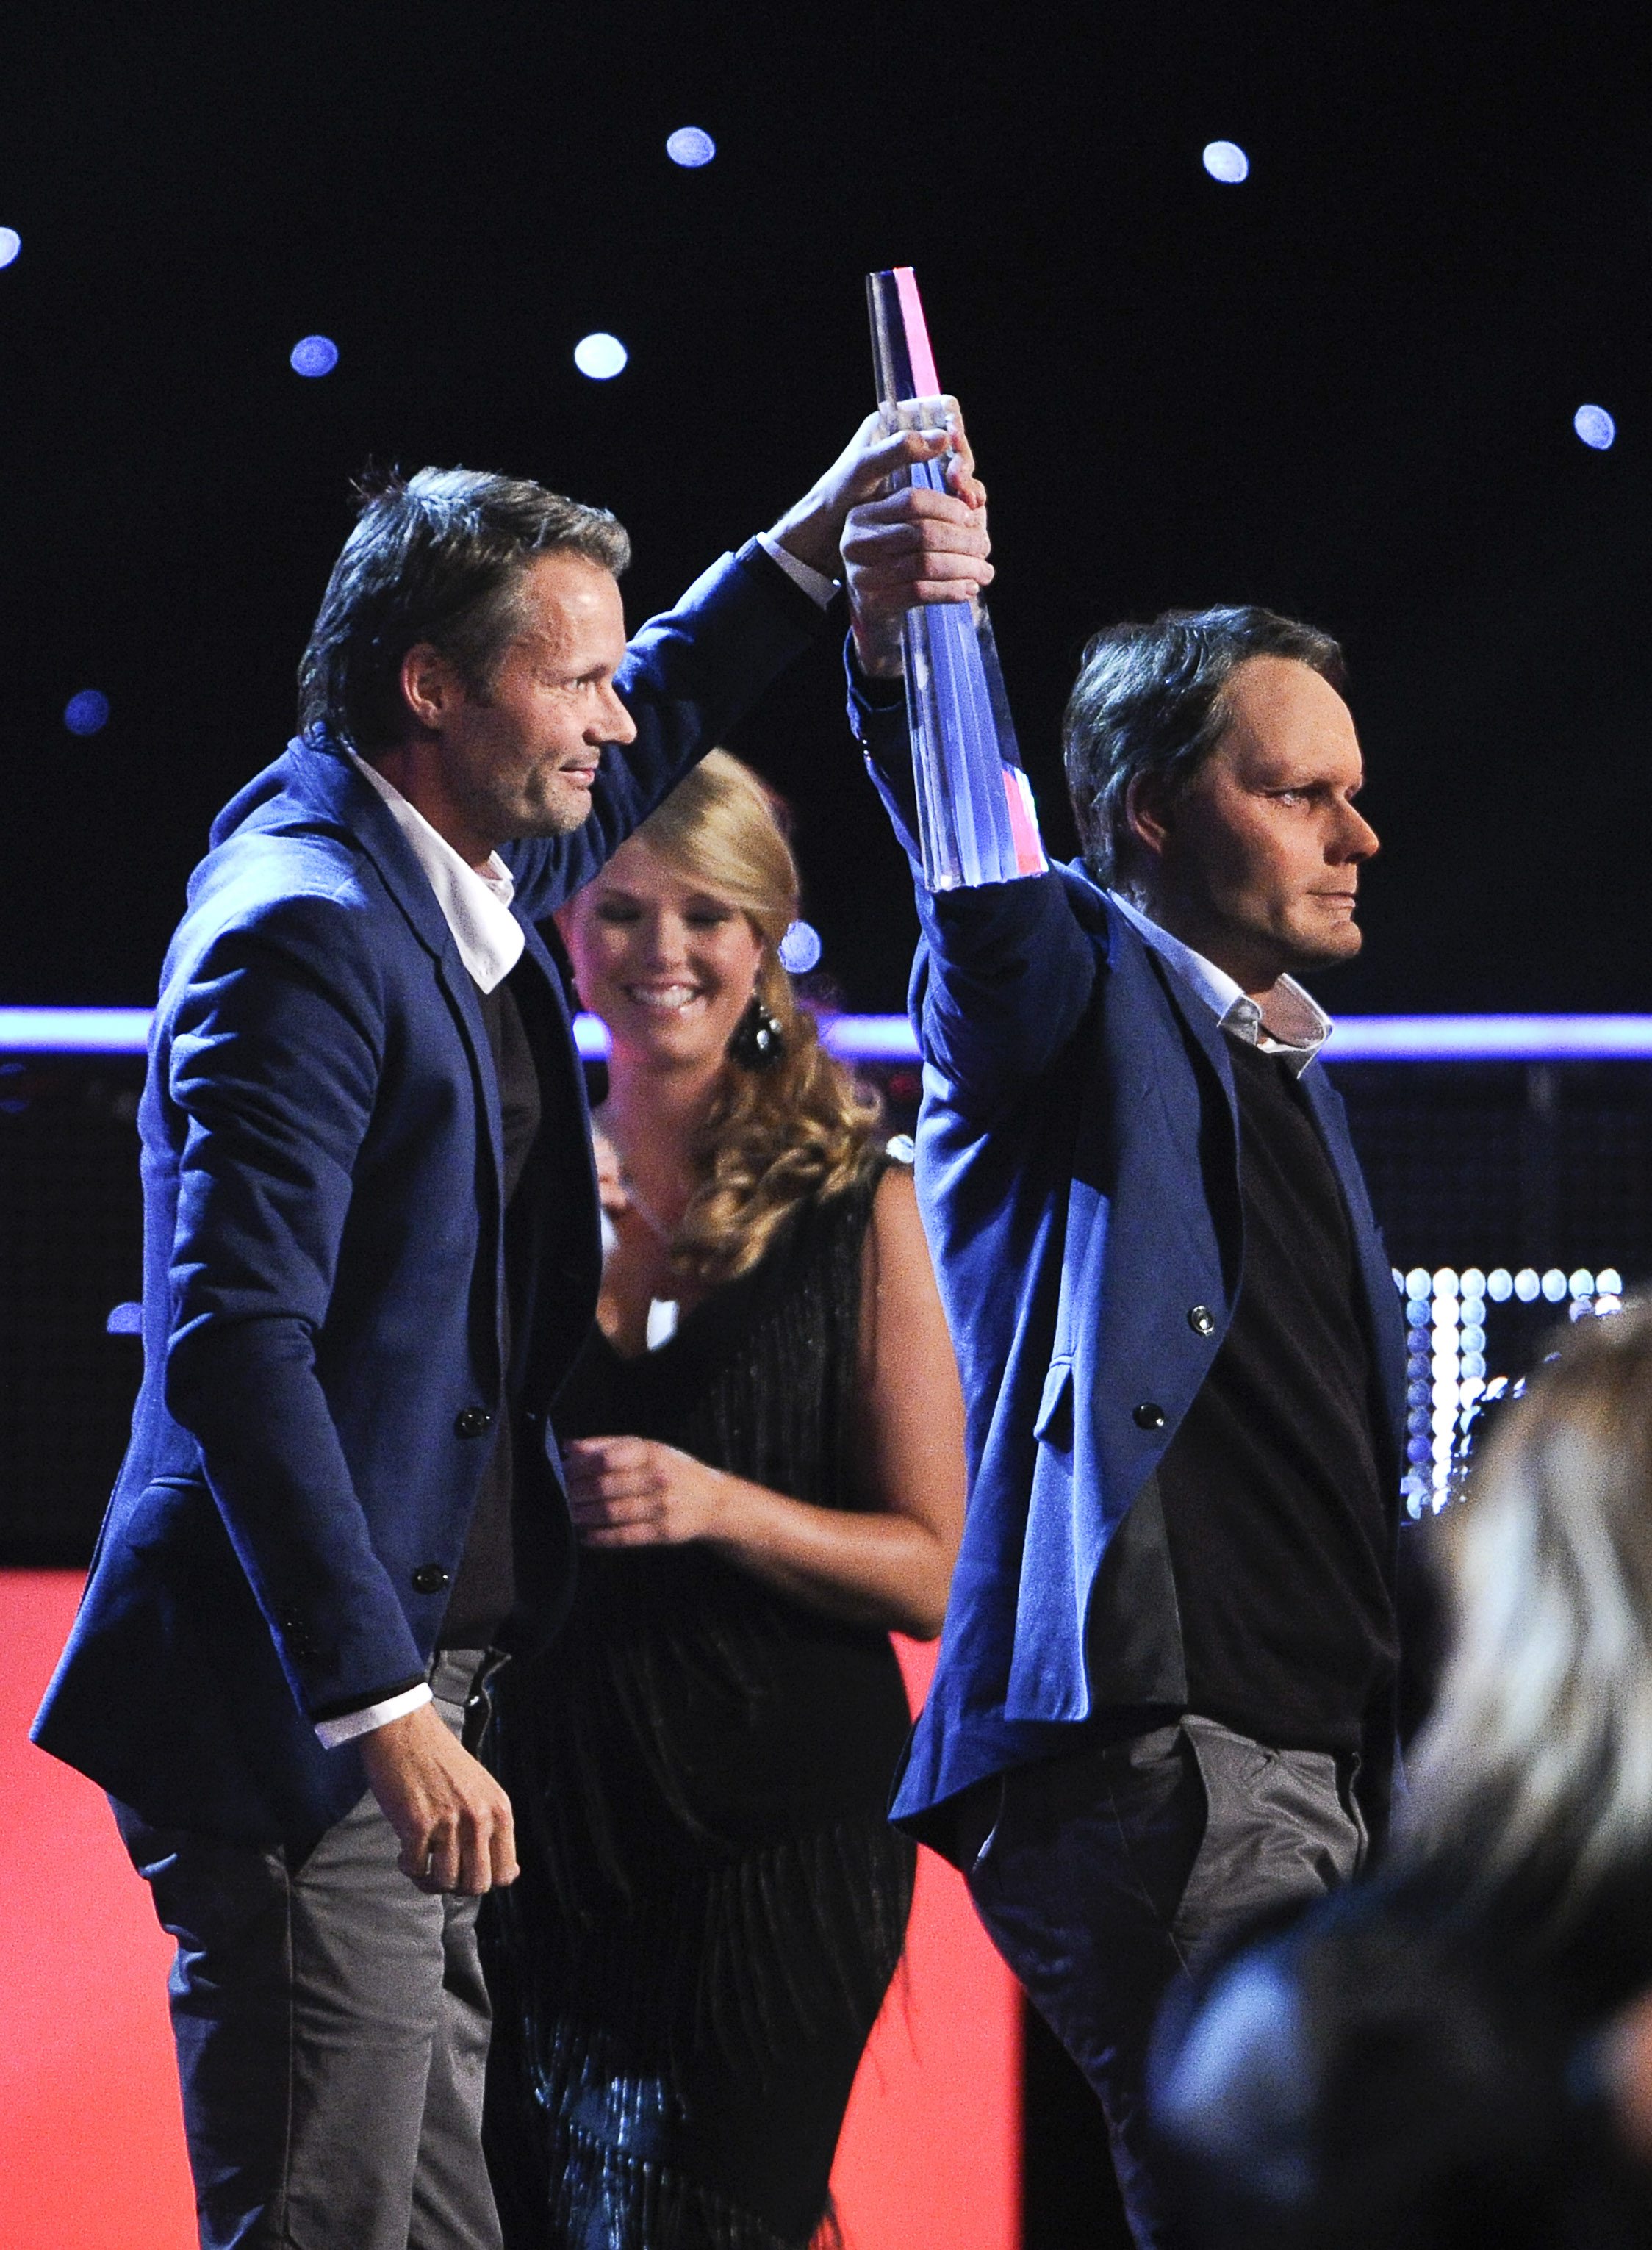 Felix Herngren vann årets humorprogram med Solsidan. Han hade med sig en klon upp på scen.